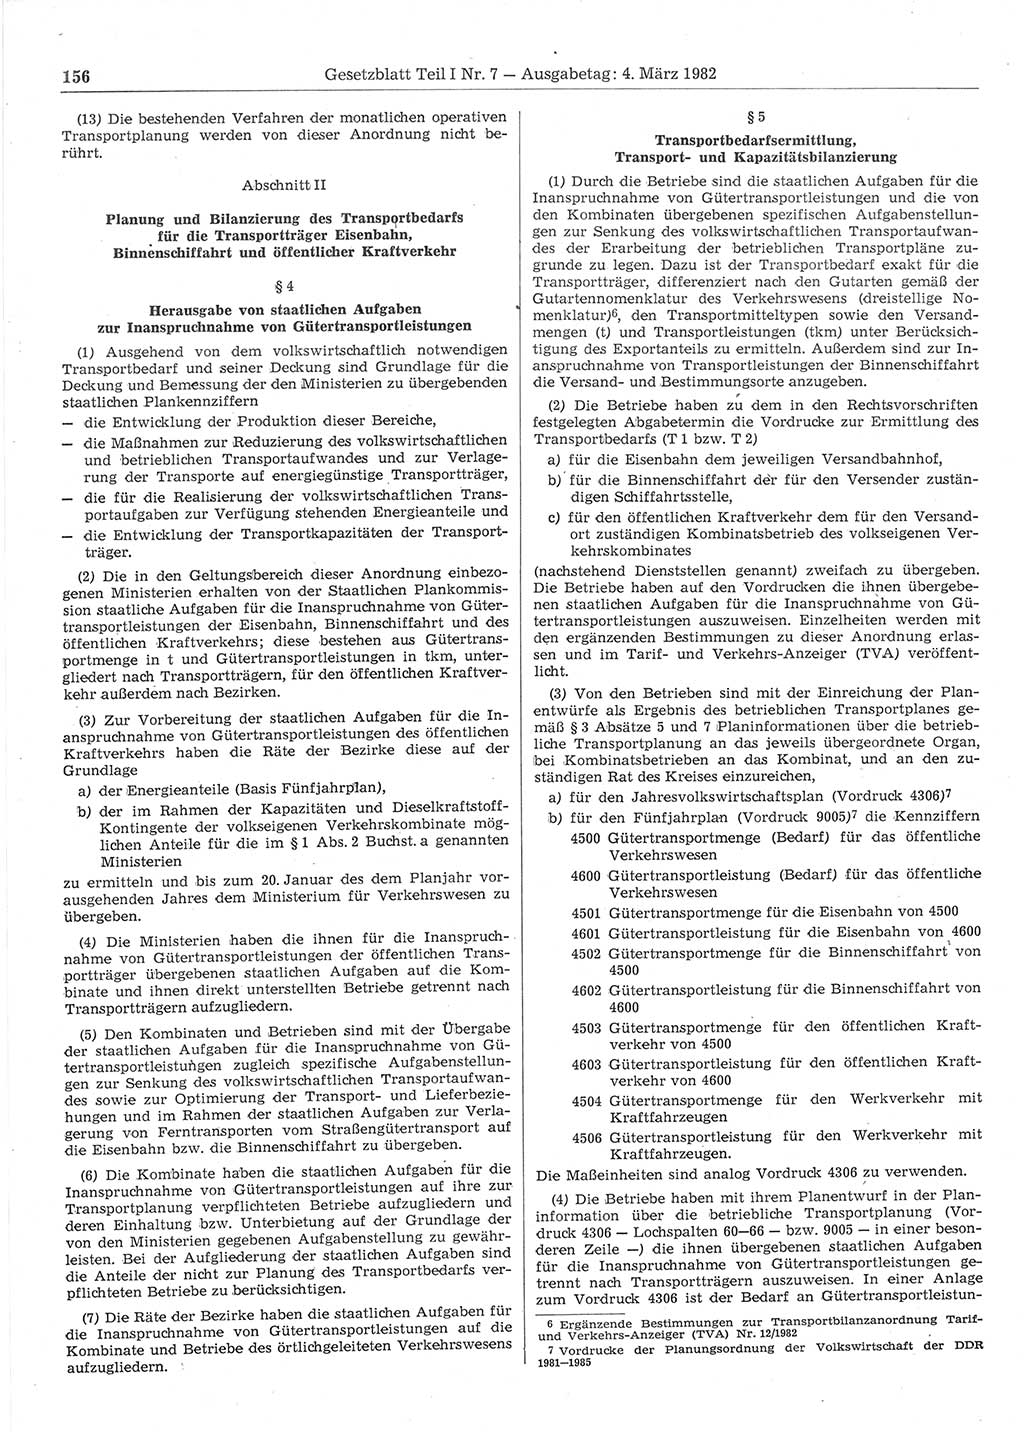 Gesetzblatt (GBl.) der Deutschen Demokratischen Republik (DDR) Teil Ⅰ 1982, Seite 156 (GBl. DDR Ⅰ 1982, S. 156)